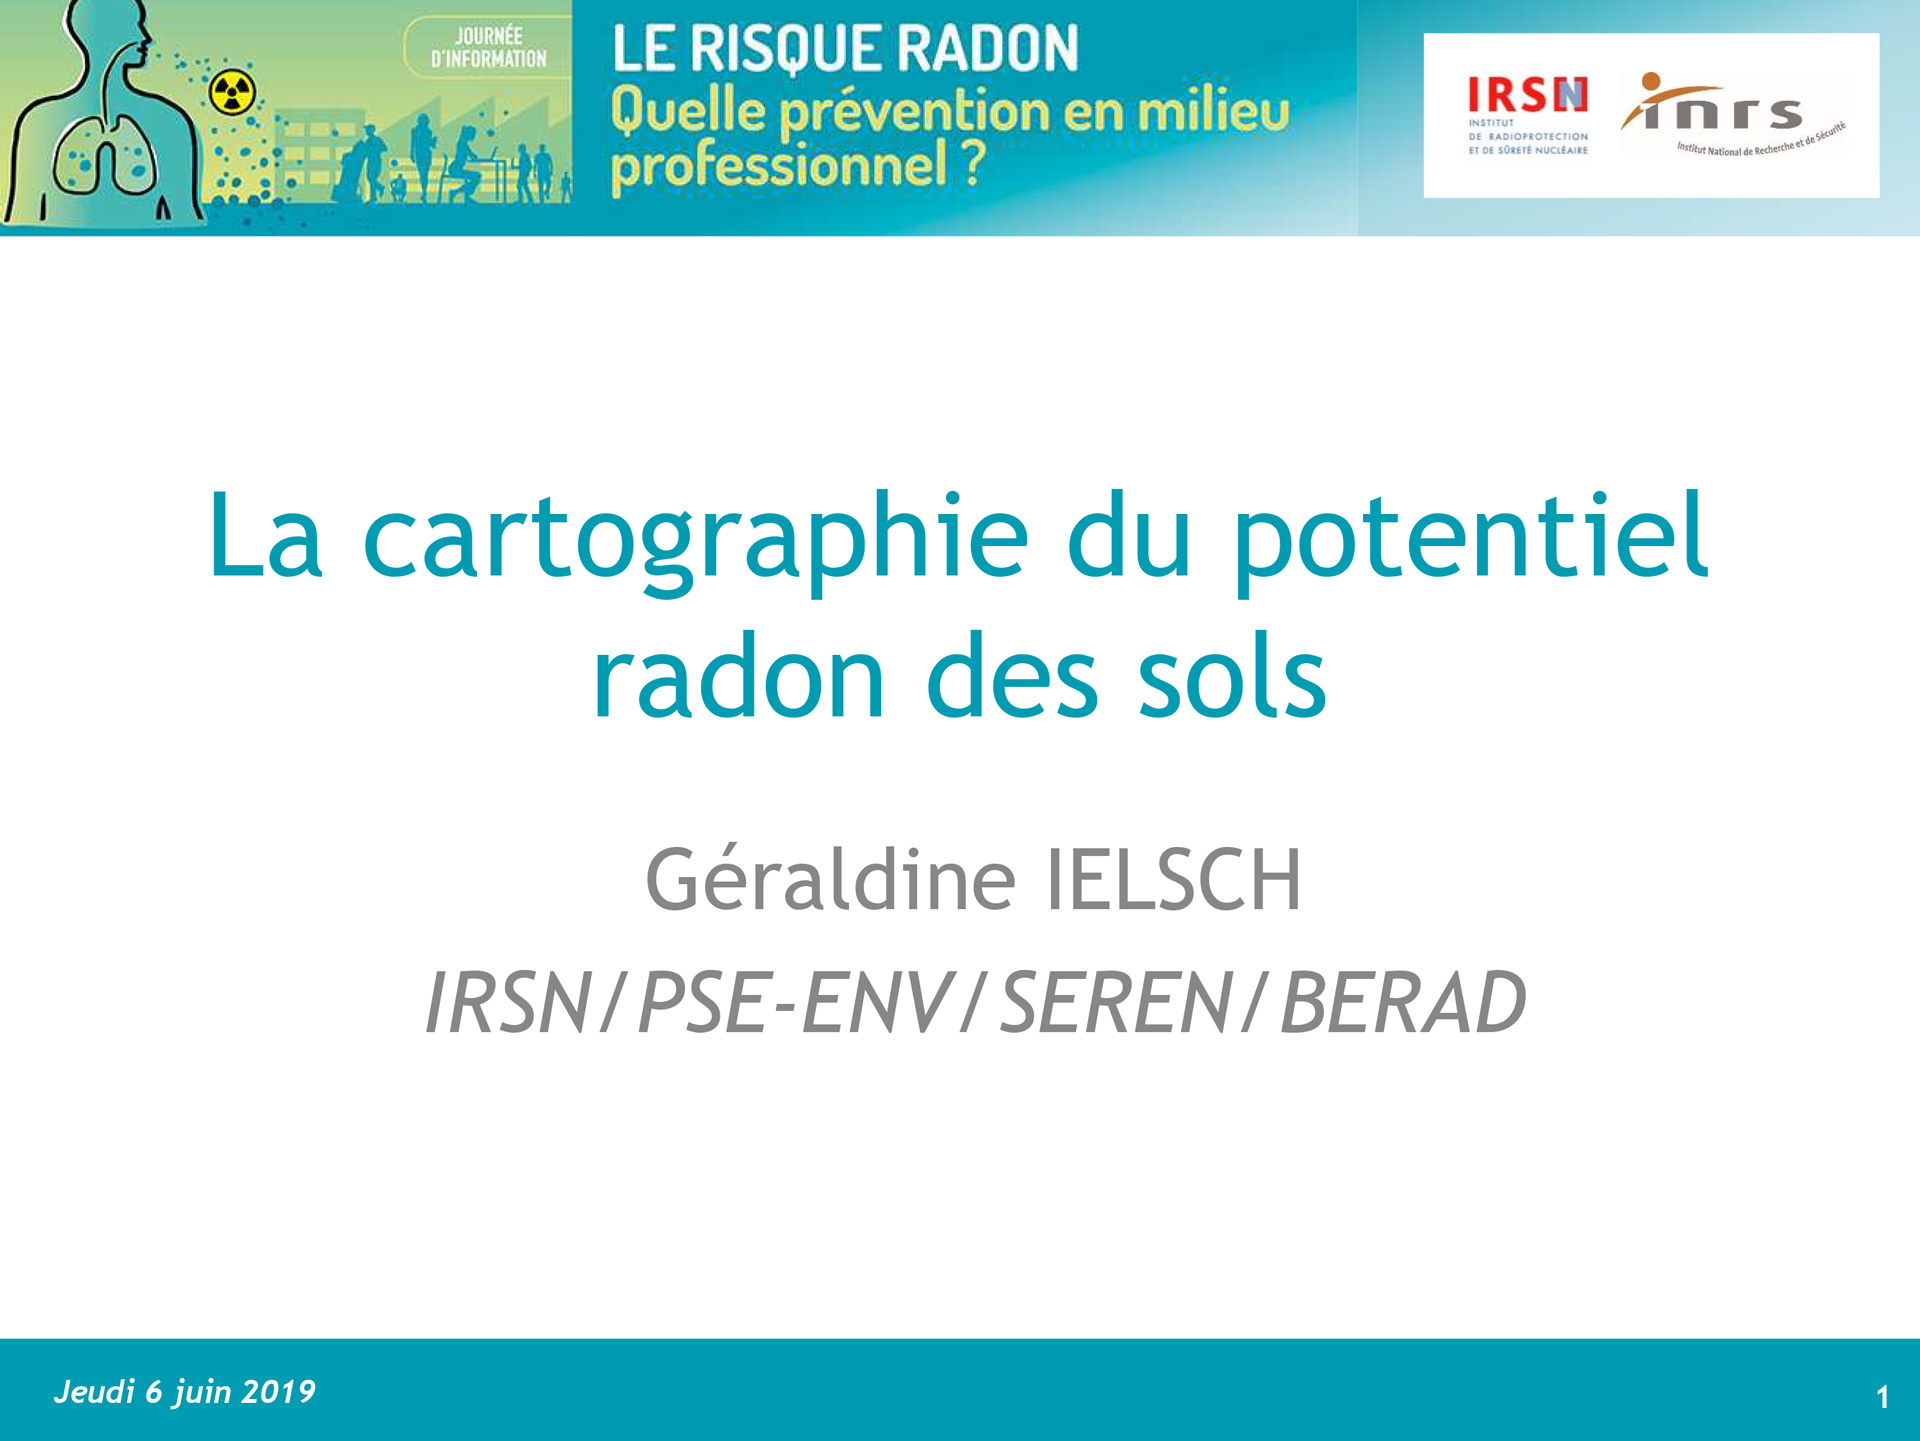 Cartographie du potentiel radon des sols par Géraldine IELSCH, IRSN